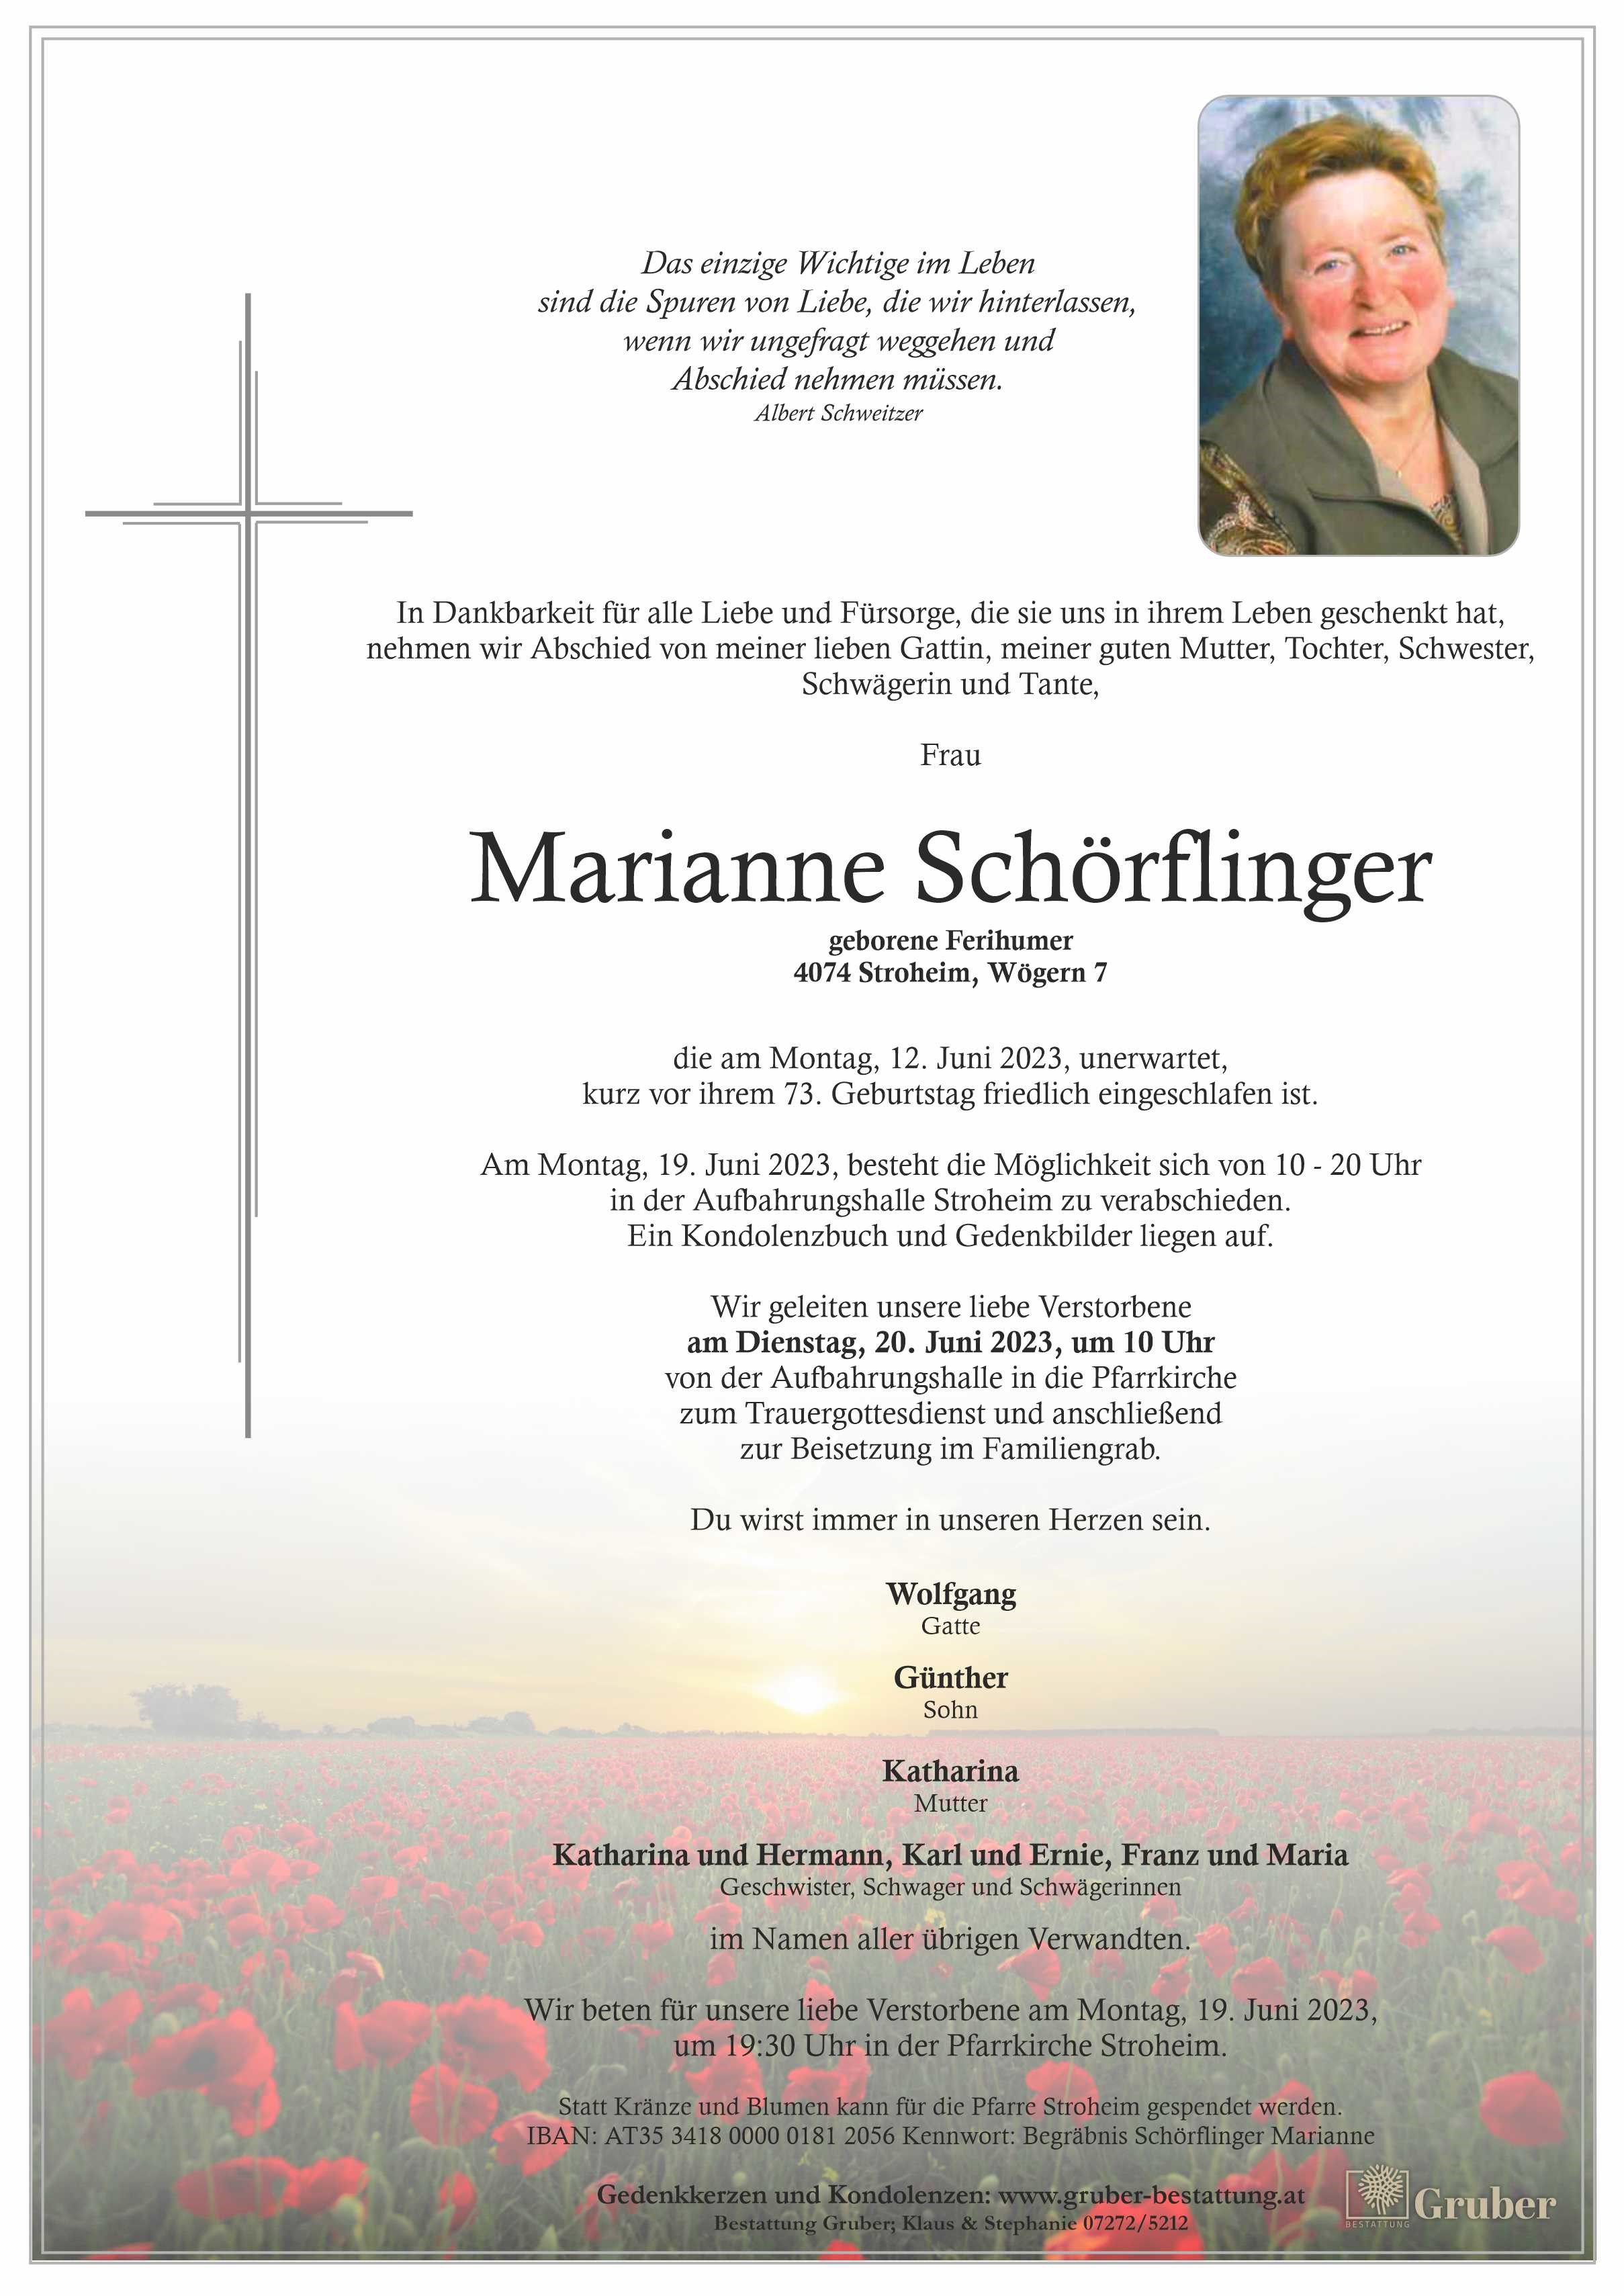 Marianne Schörflinger (Stroheim)